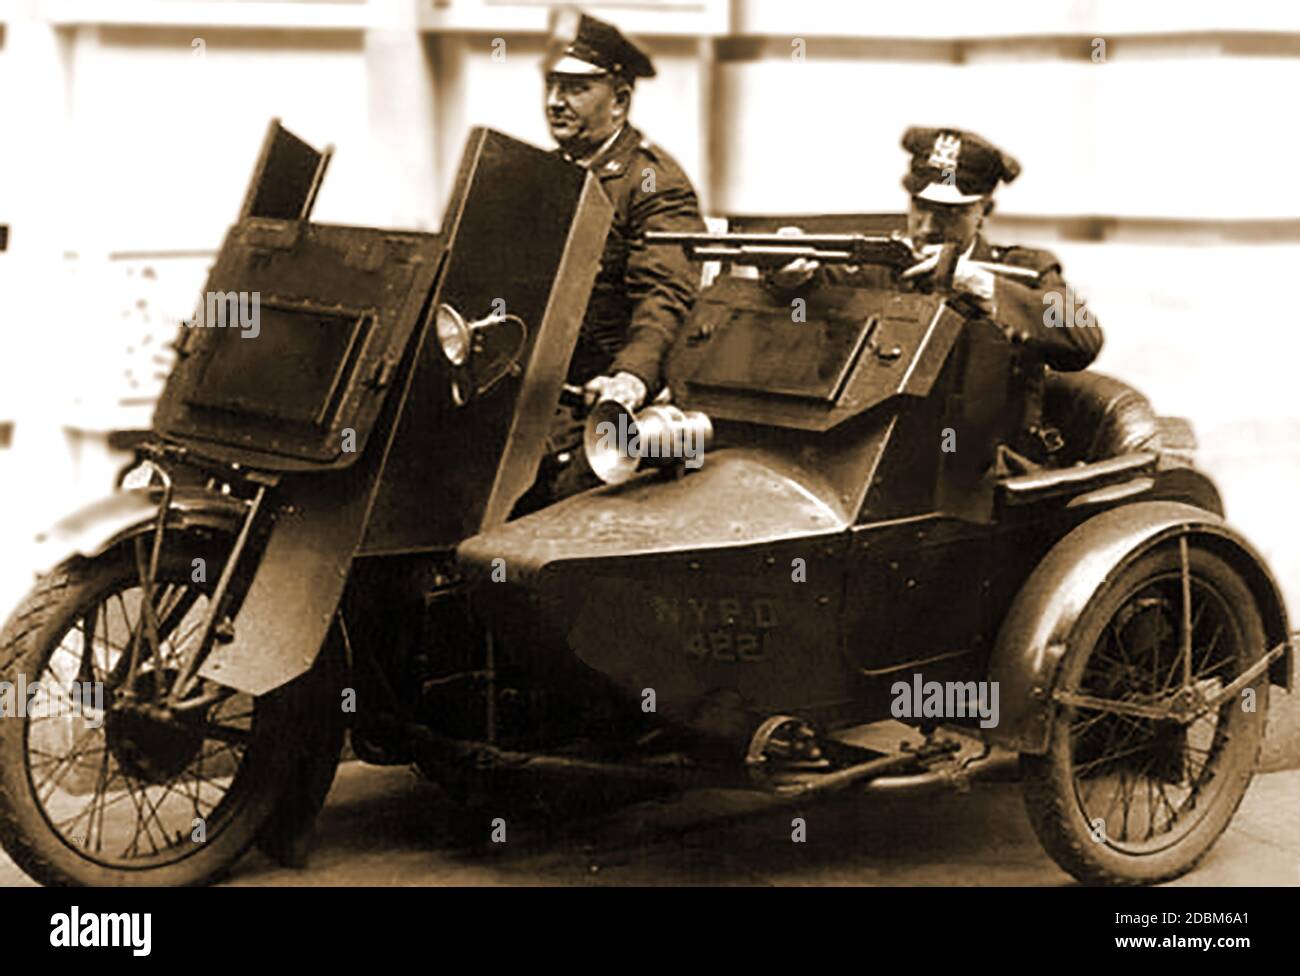 Ein frühes Foto von New York bewaffnete Stadtpolizei (NYPD) patrouillieren in einem bewaffneten Motorrad & Beiwagen. Präsident der Polizeikommission, Theodore Roosevelt initiierte die Motorrad-Kader im Jahr 1911. Stockfoto